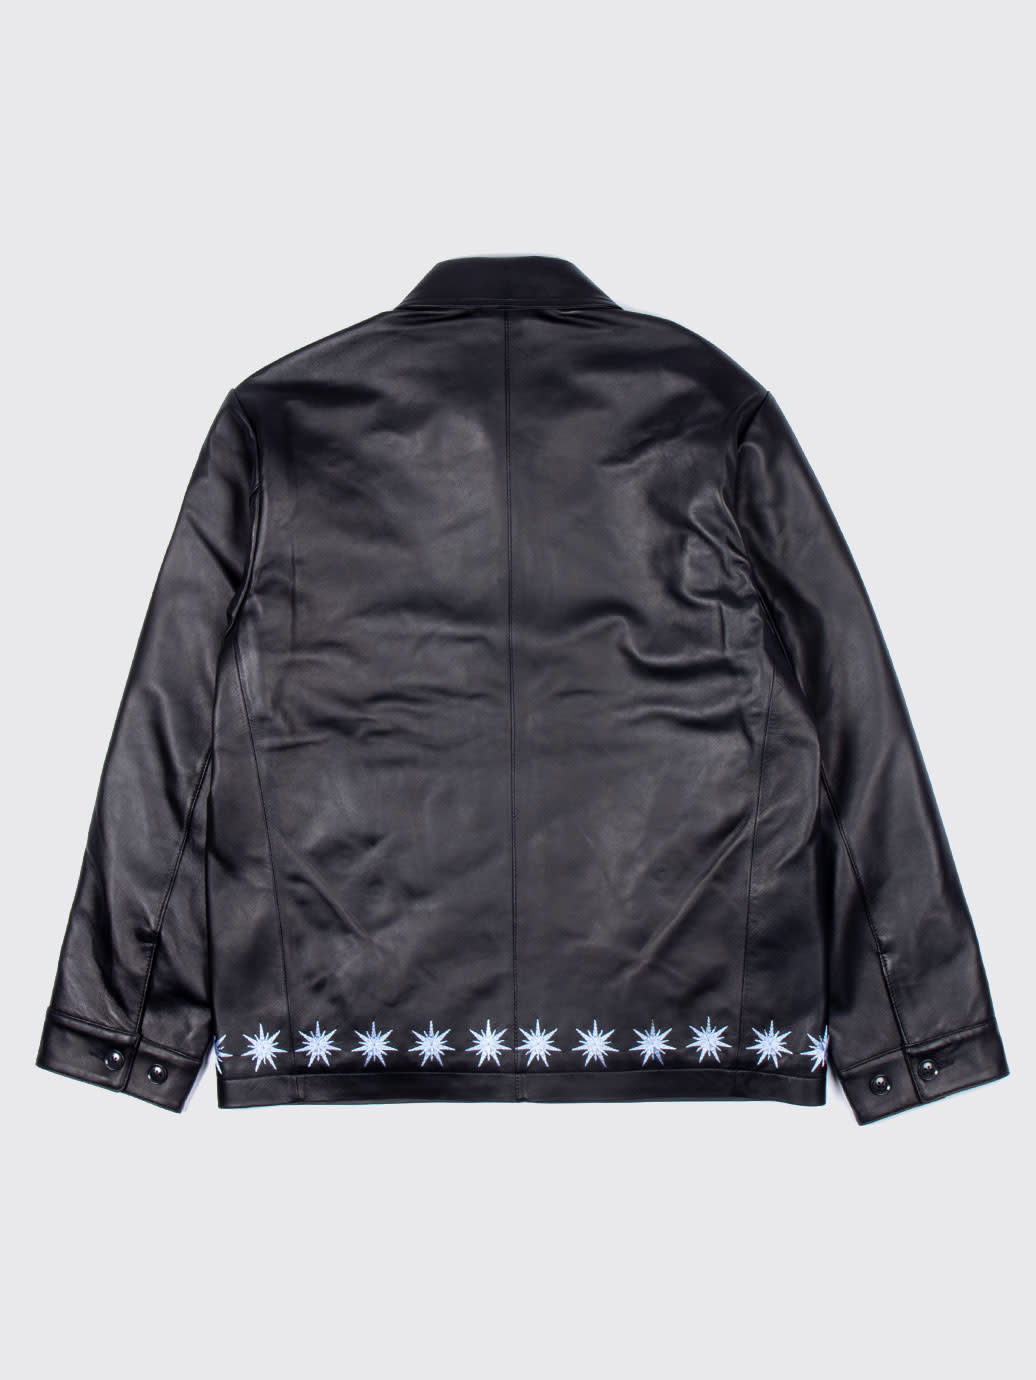 BOTT Sparkle Leather Jacket レザー-